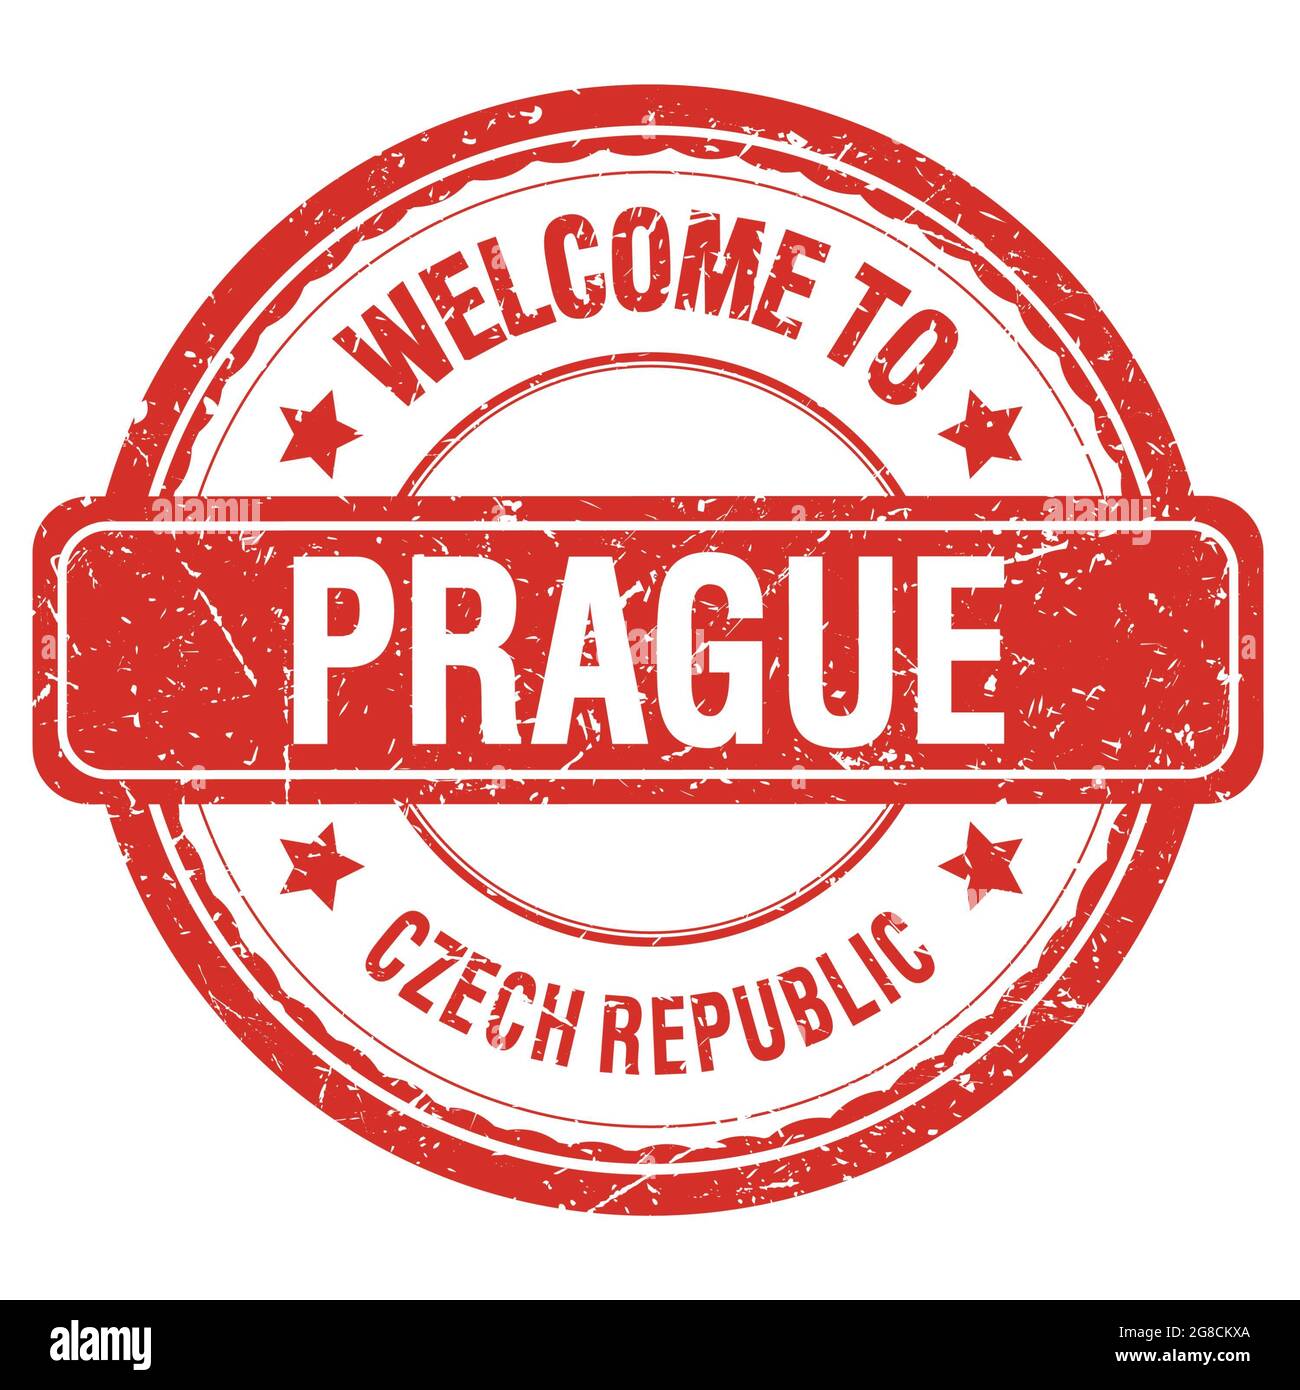 BIENVENUE À PRAGUE - RÉPUBLIQUE TCHÈQUE, mots écrits sur timbre rouge grungy Banque D'Images